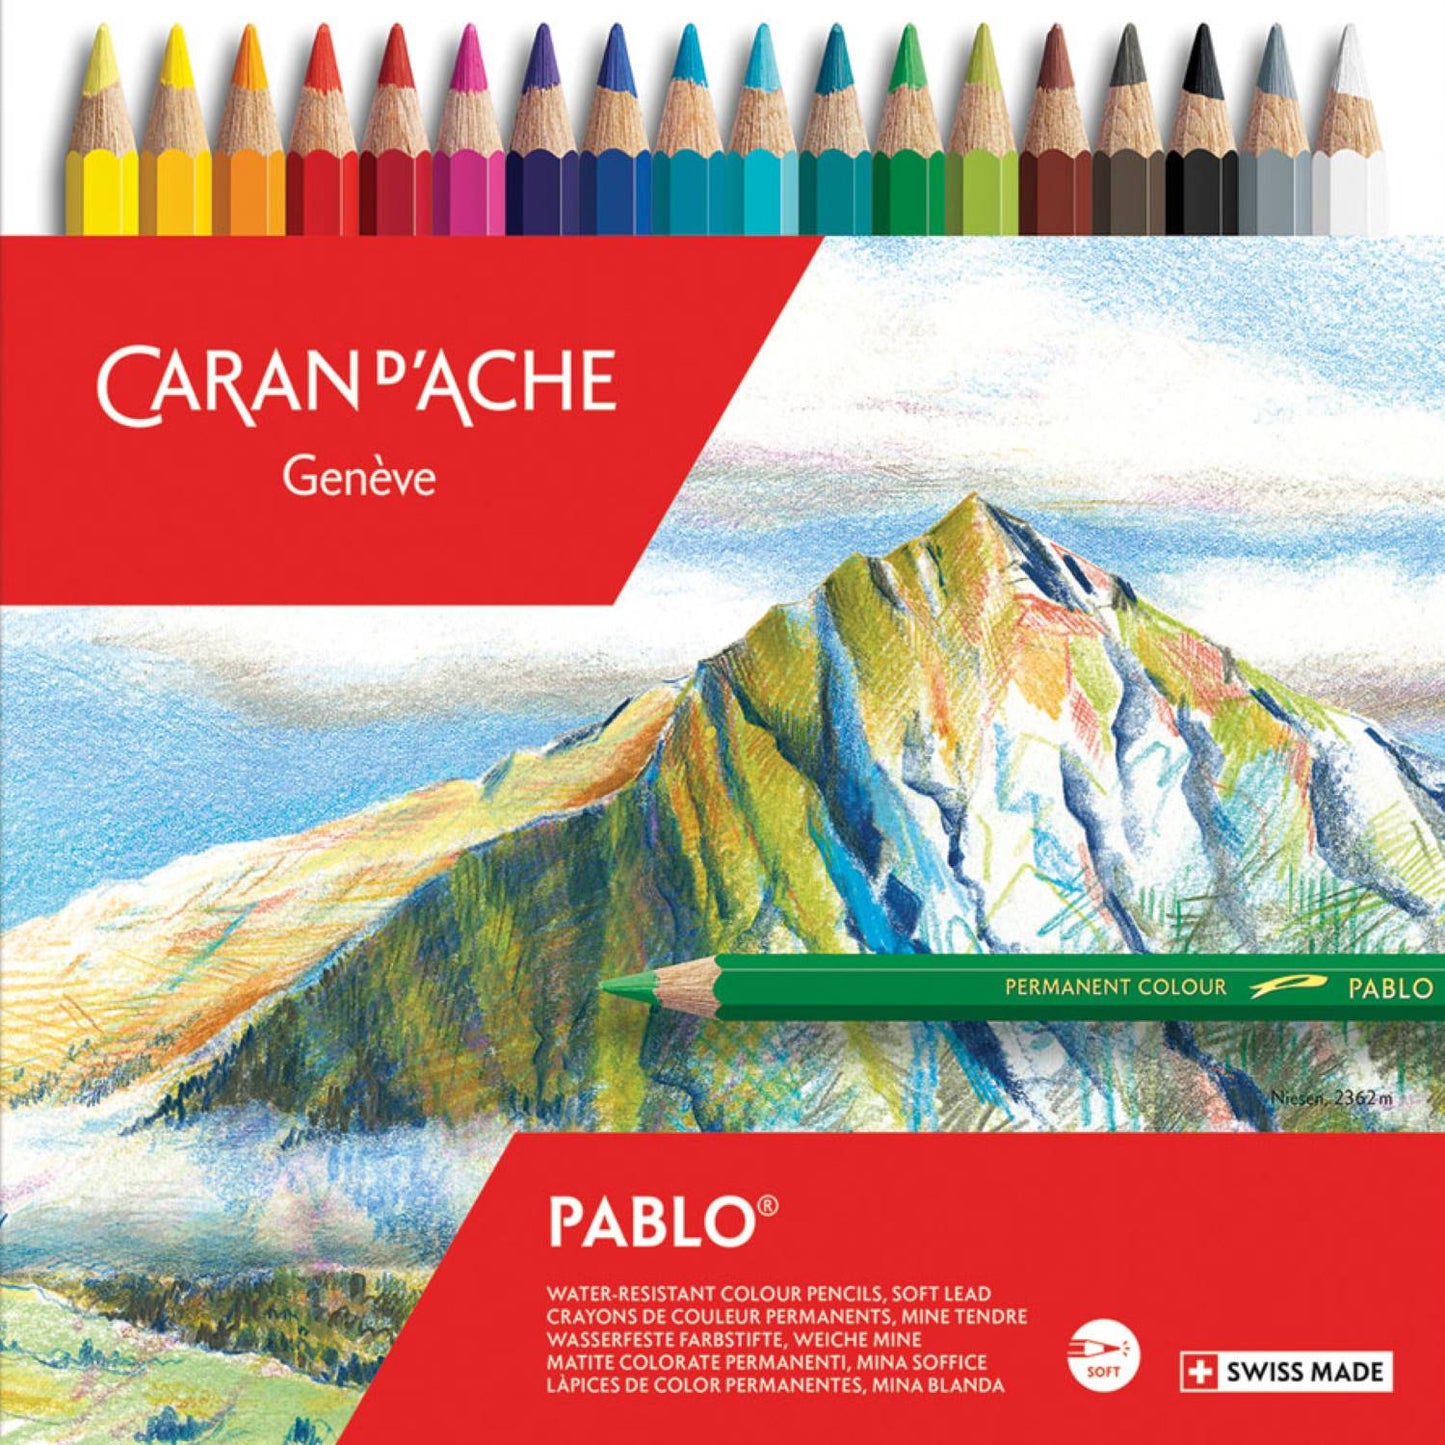 Caran d'Ache Pablo [colours 139 to 499]